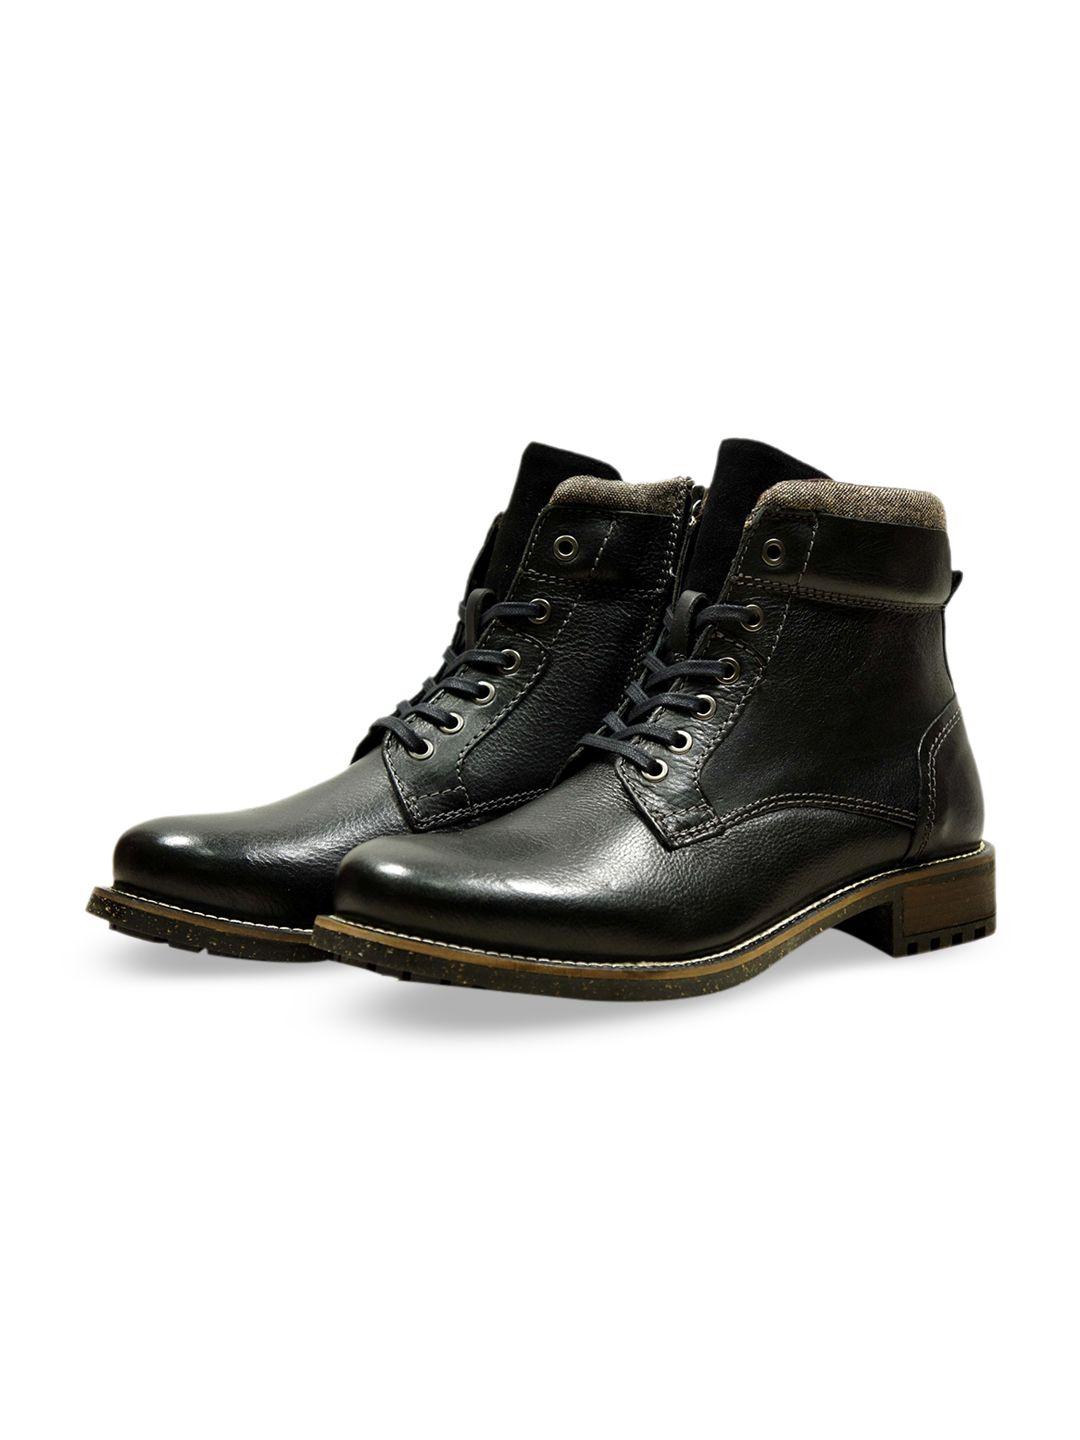 hx london black lace-up boots